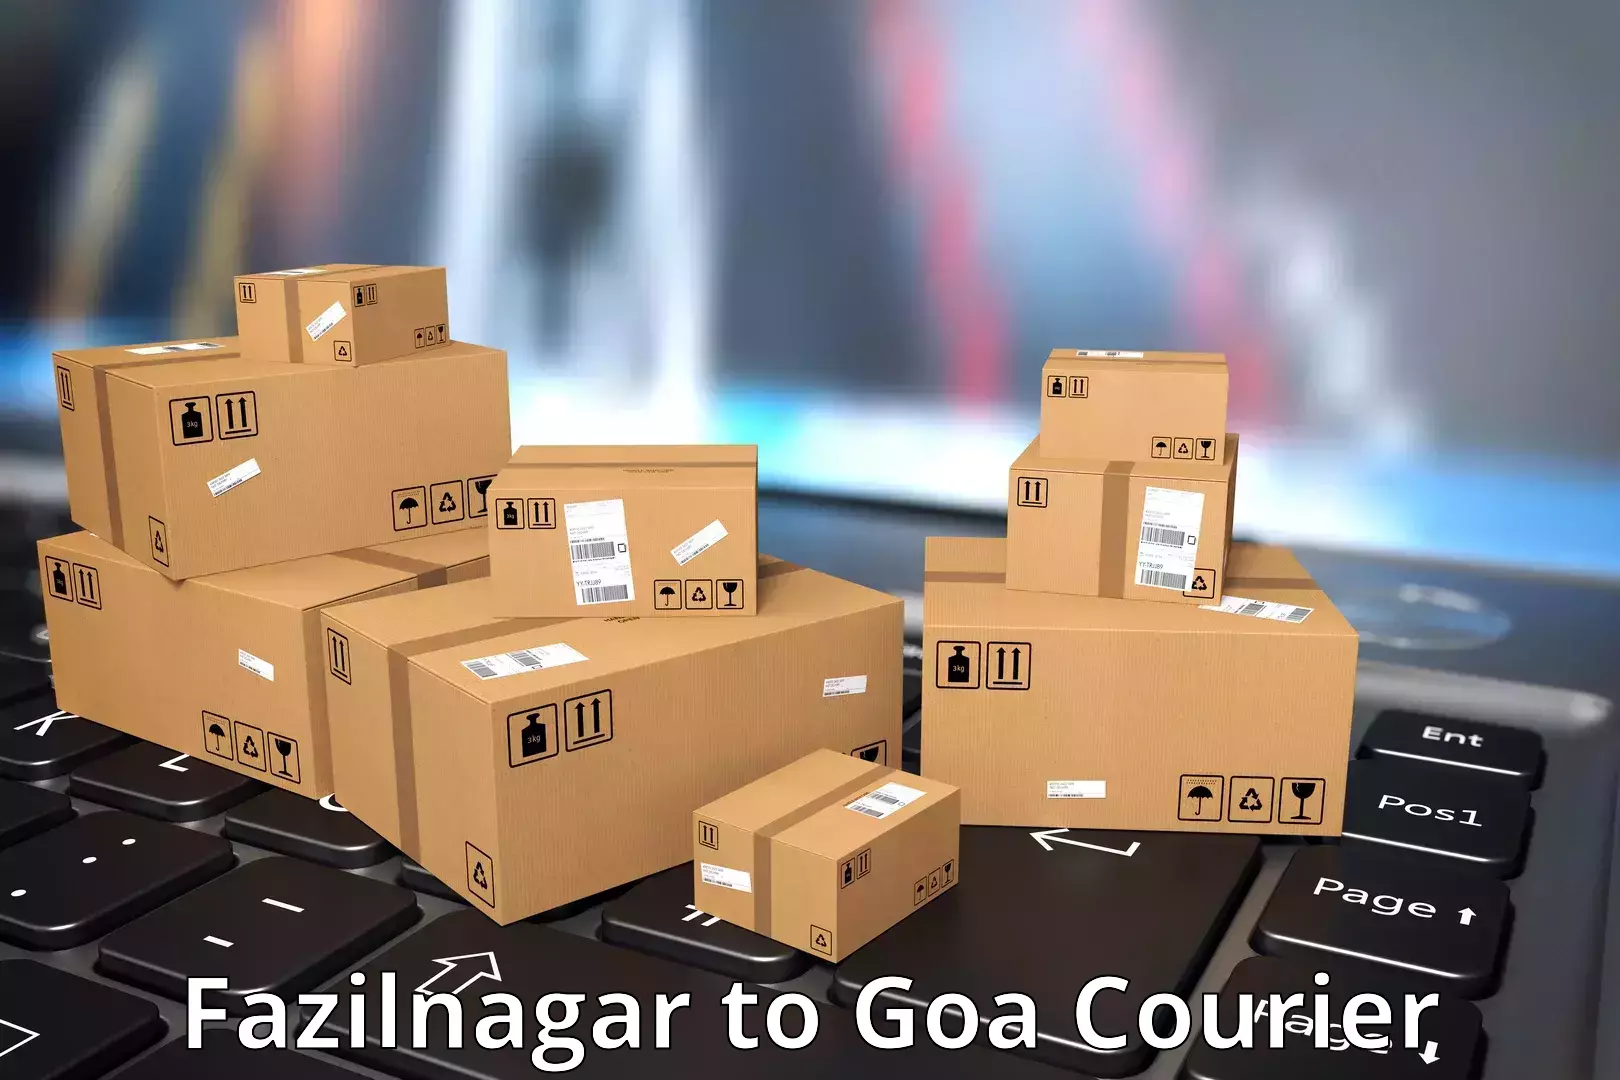 24-hour courier service Fazilnagar to Vasco da Gama